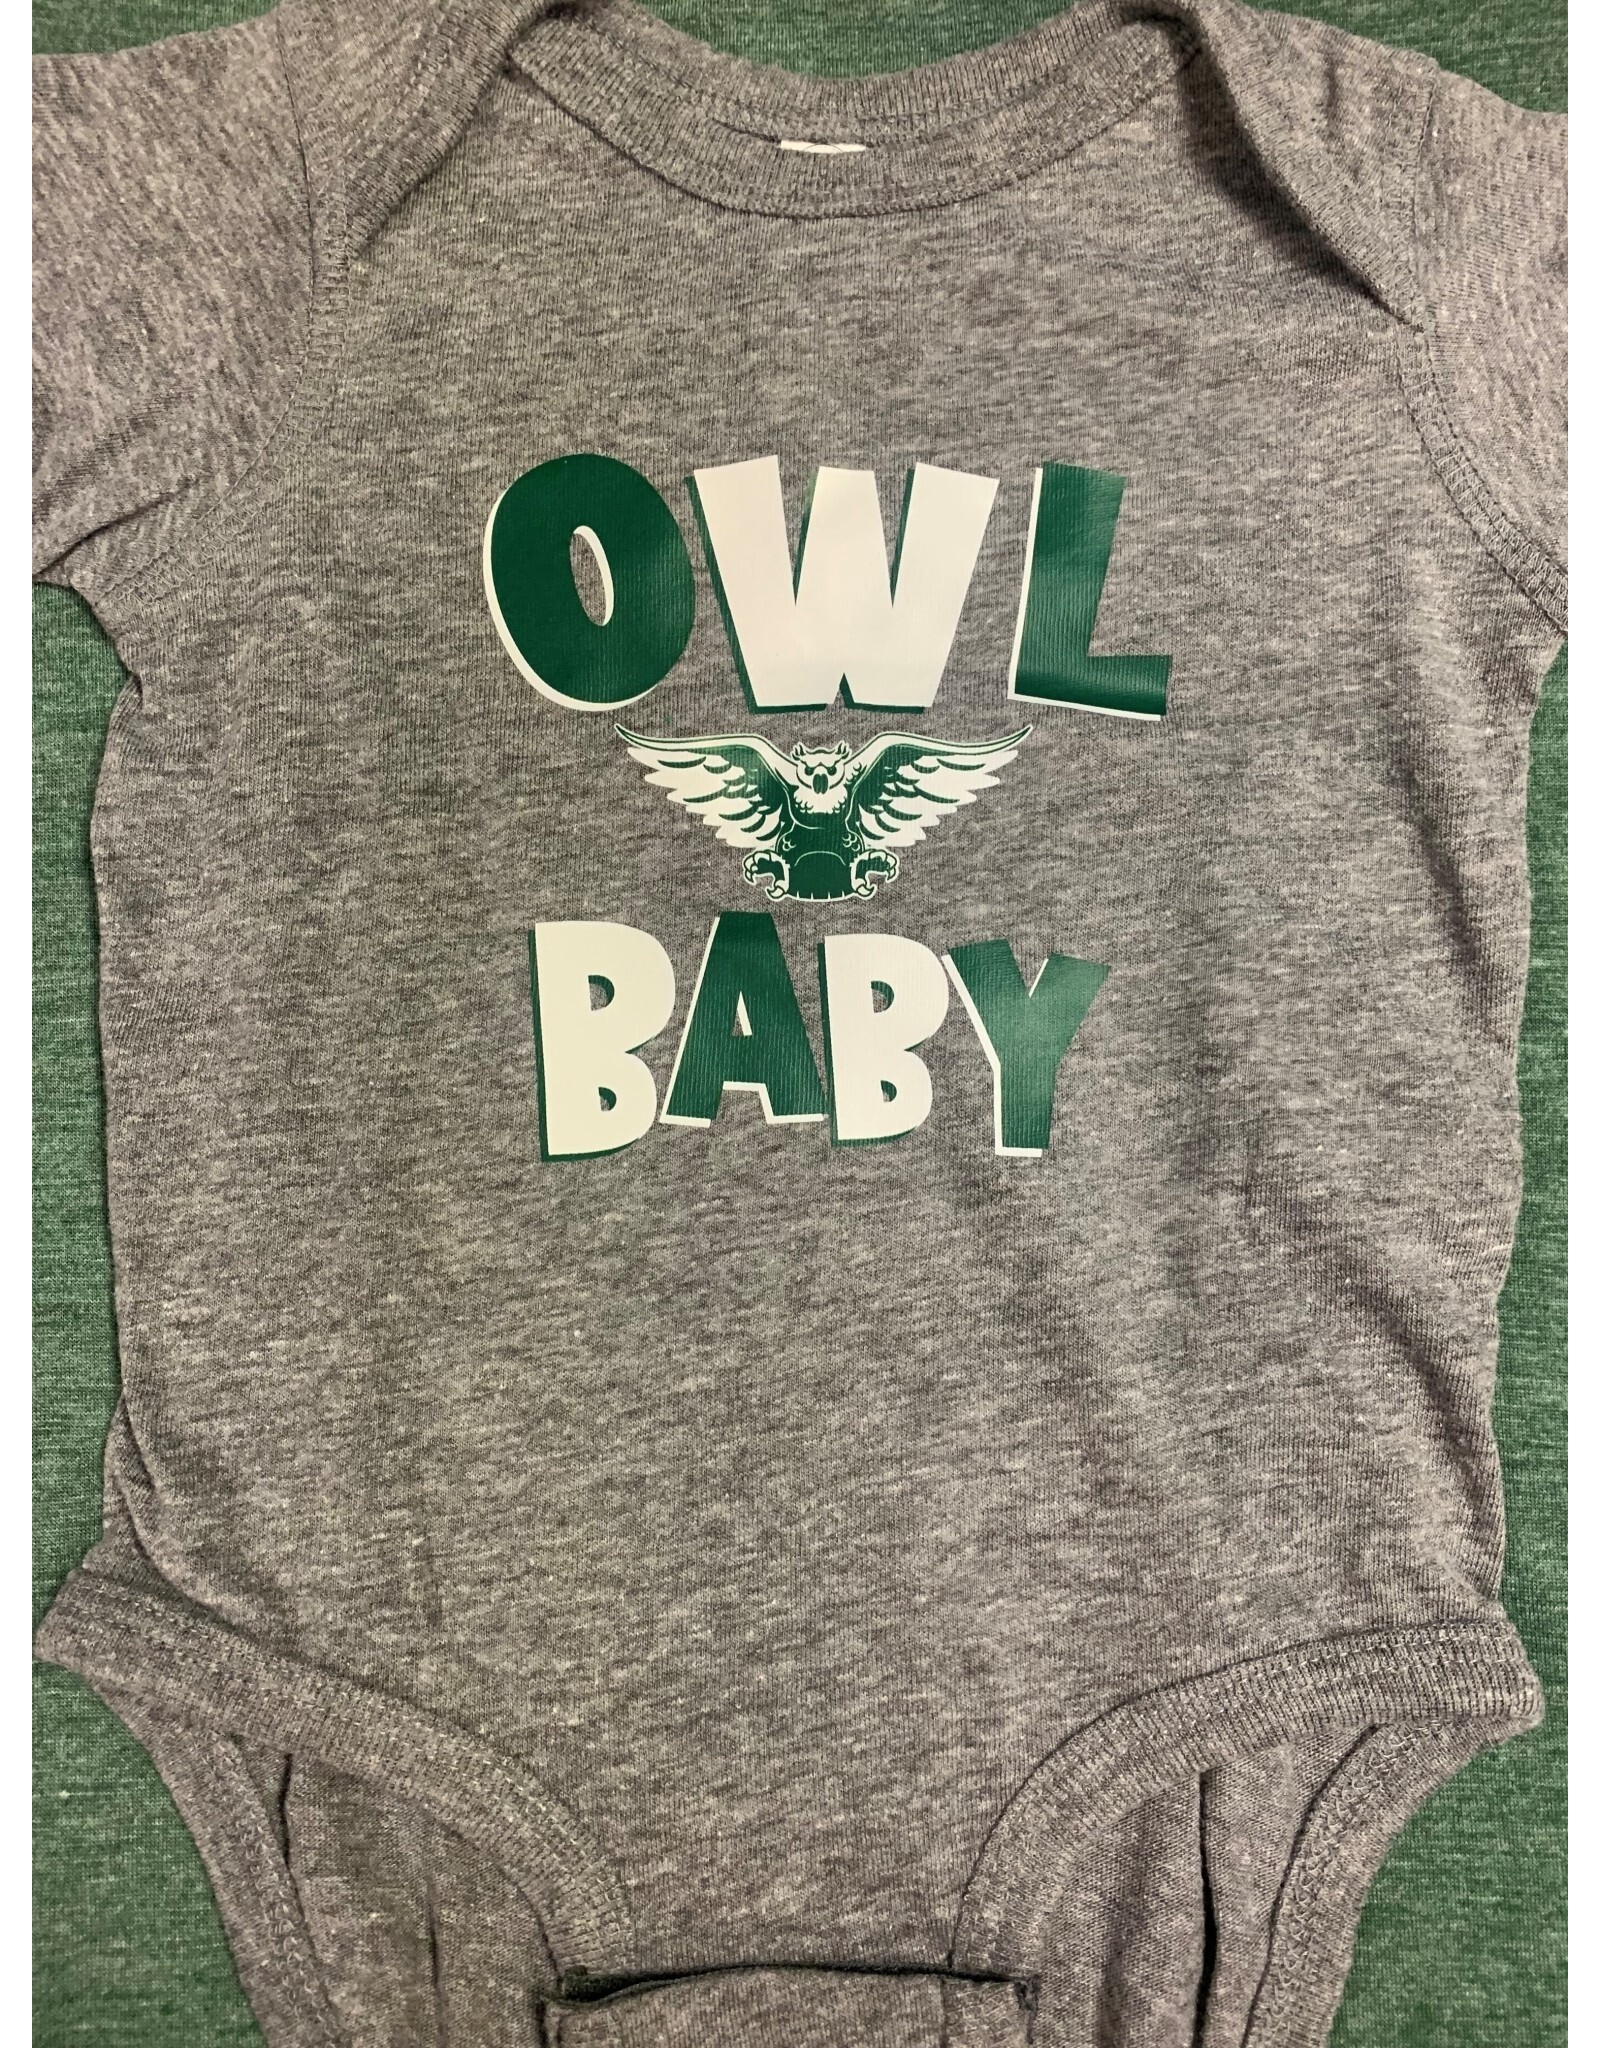 2023 D Sport Owl Baby onesie